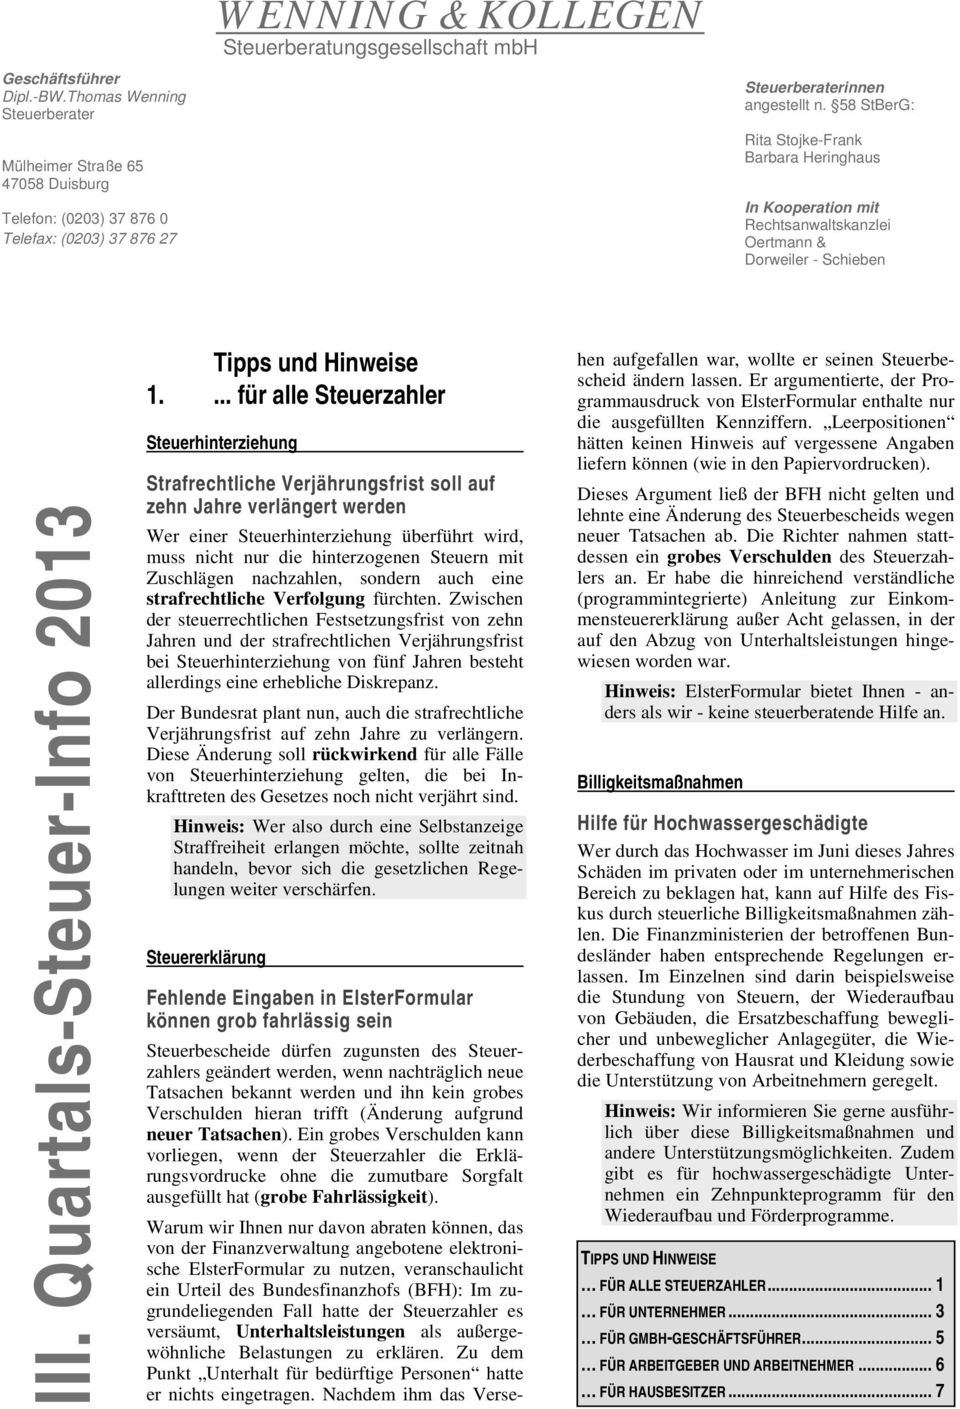 58 StBerG: Rita Stojke-Frank Barbara Heringhaus In Kooperation mit Rechtsanwaltskanzlei Oertmann & Dorweiler - Schieben III. Quartals-Steuer-Info 2013 Tipps und Hinweise 1.